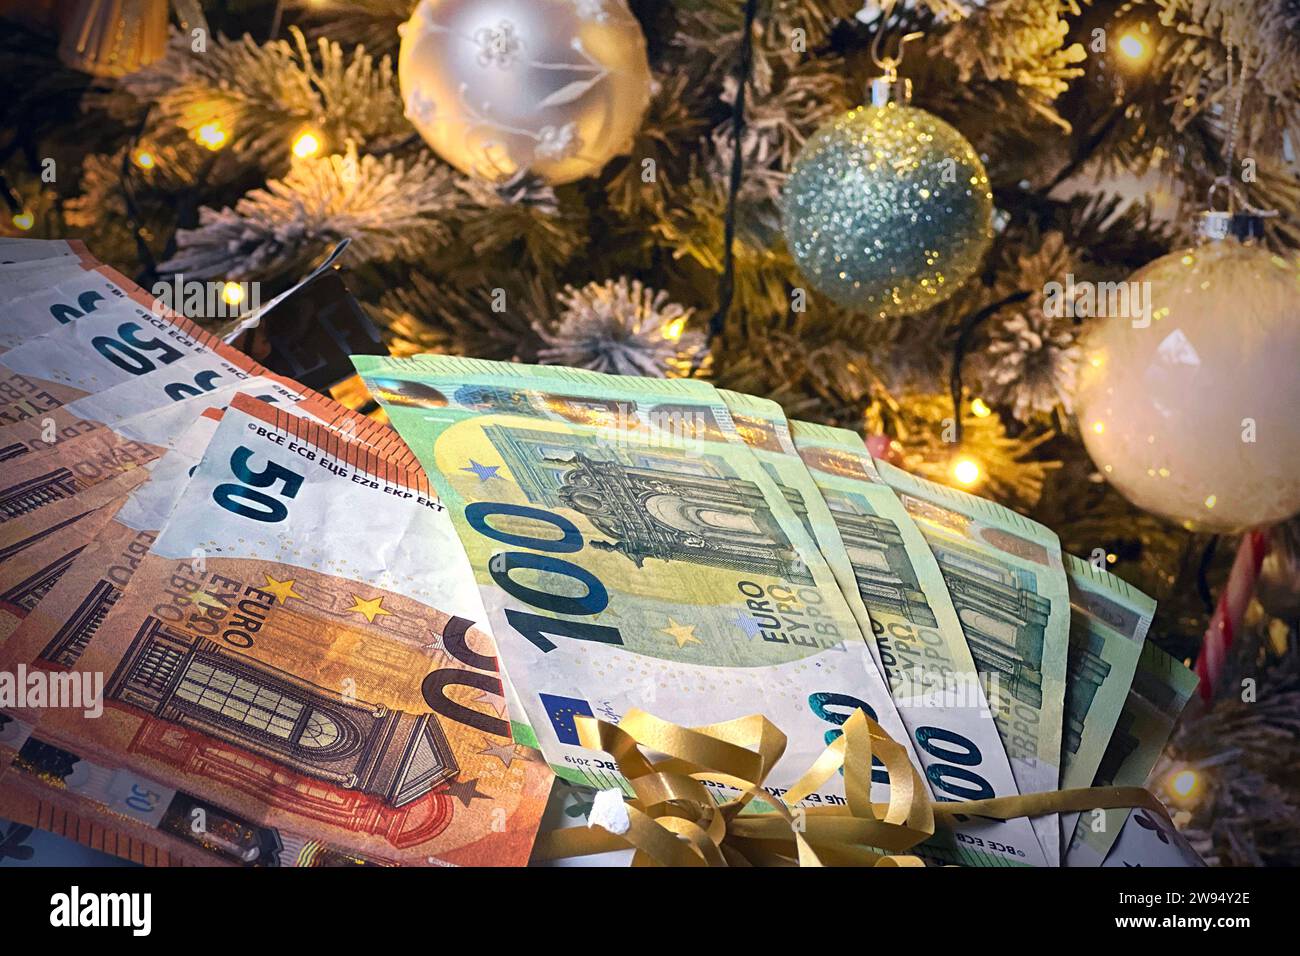 Themenfoto:Geldgeschenk zu Weihnachten. Euroscheine vor Weihnachtsbaum,Geld schneken, *** Themed photo Christmas gift of money Euro bills in front of Christmas tree, money gift, Stock Photo